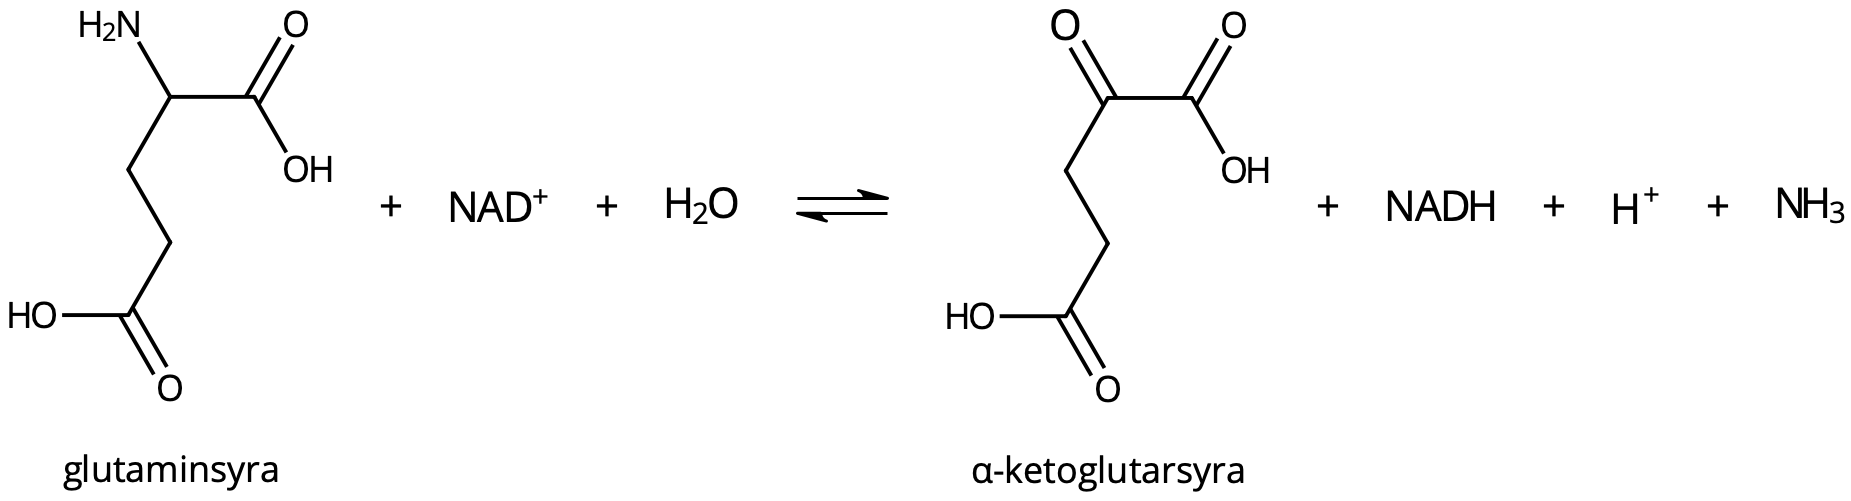 Vid deaminering av glutaminsyra bildas α-ketoglutarsyra och ammoniak.